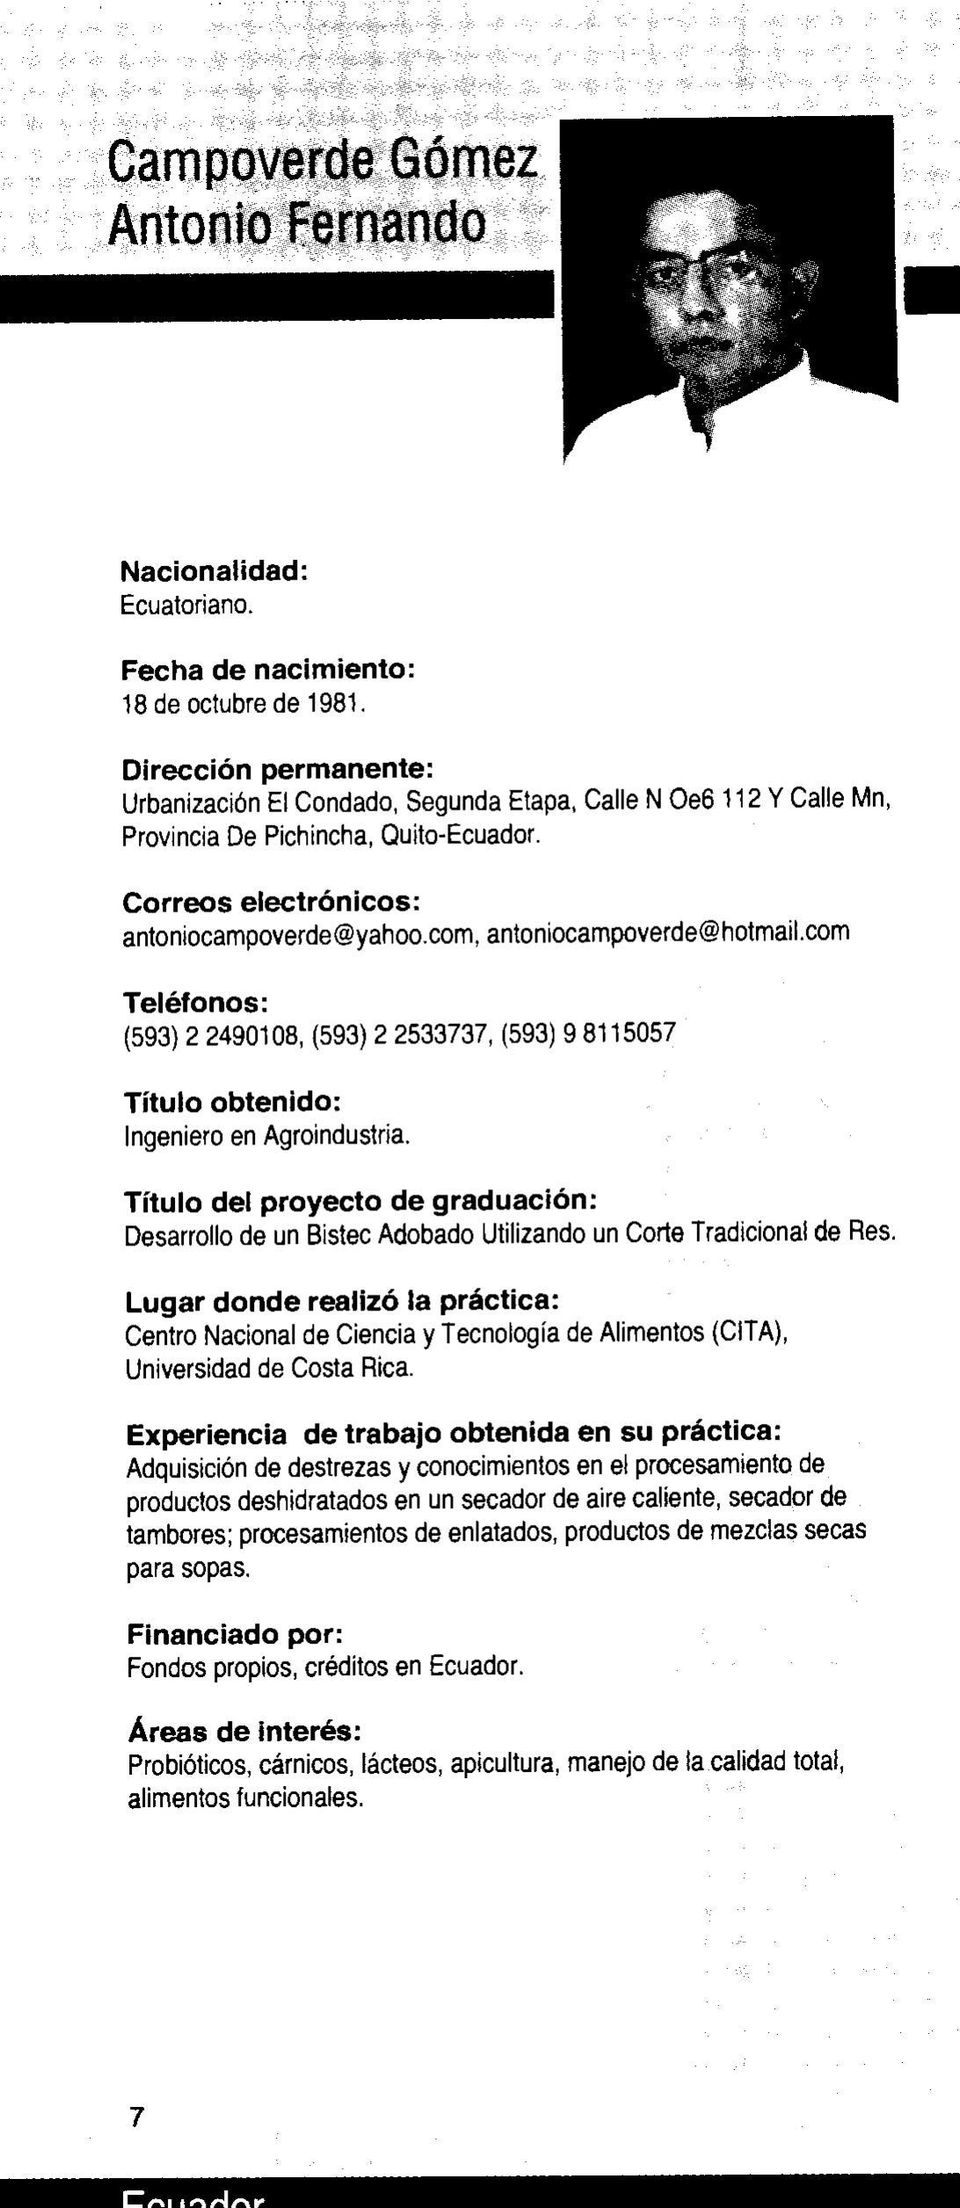 Desarrollo de un Bistec Adobado Utilizando un Corte Tradicional de Res. Centro Nacional de Ciencia y Tecnología de Alimentos (CITA}, Universidad de Costa Rica.